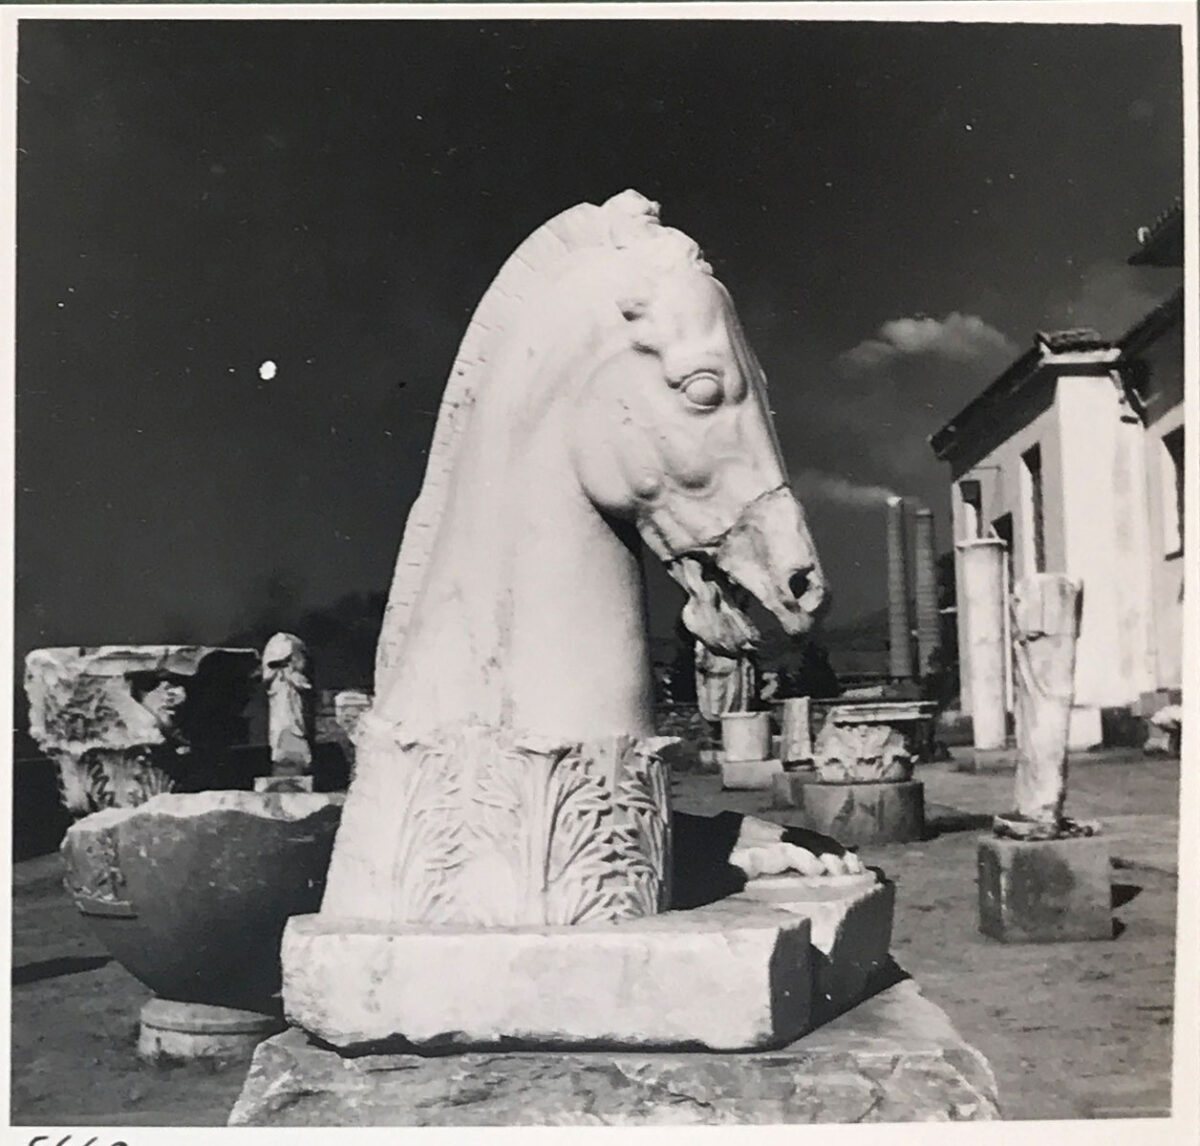 Νικόλαος Τομπάζης. Η αυλή του Μουσείου της Ελευσίνας, 9/9/1955. © Μουσείο Μπενάκη/Φωτογραφικά Αρχεία.